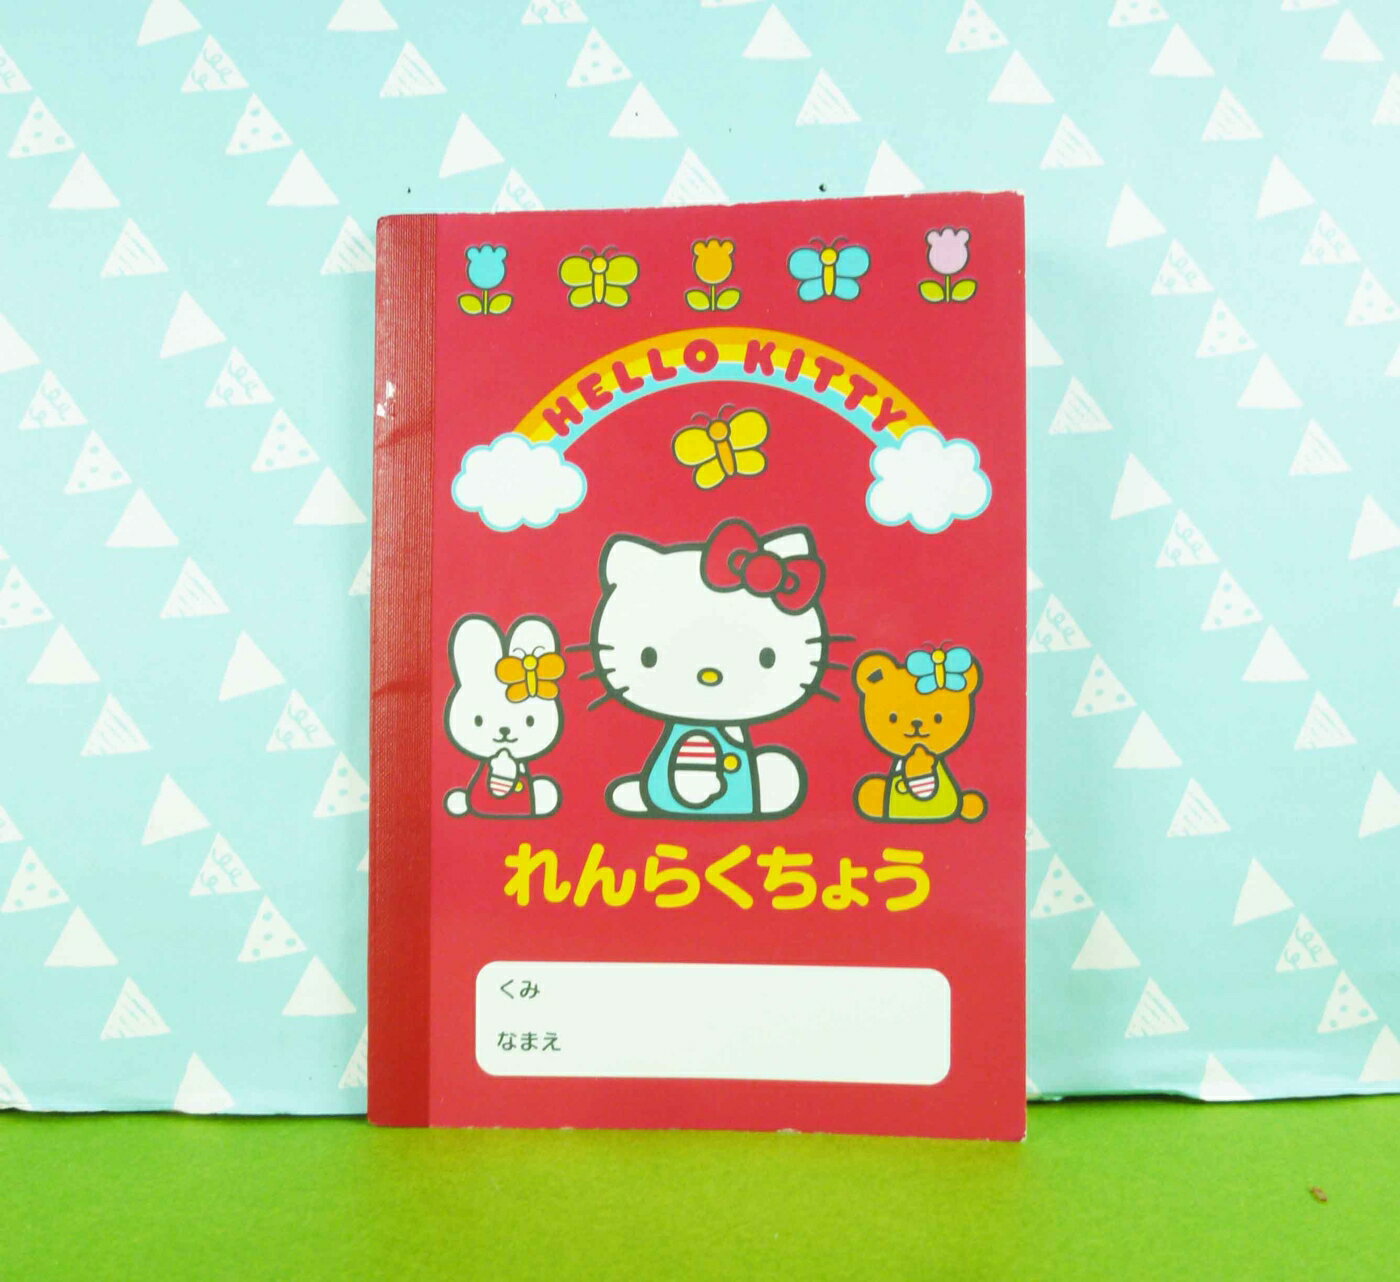 【震撼精品百貨】Hello Kitty 凱蒂貓 筆記本 側坐 紅【共1款】 震撼日式精品百貨